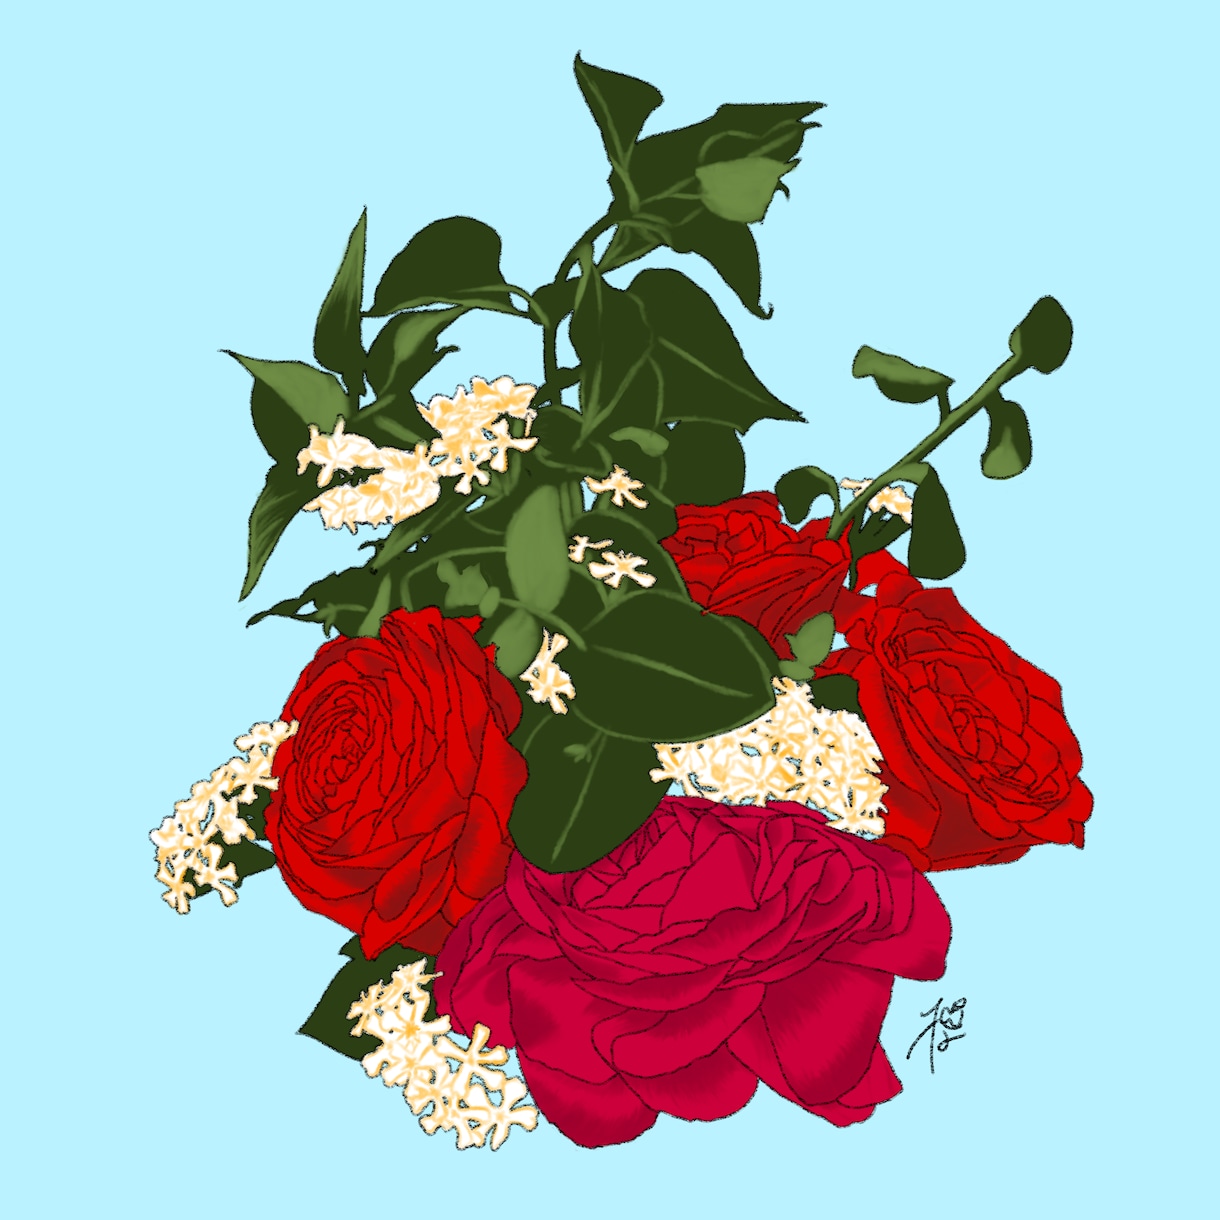 花束のイラスト描きます あなたのために購入した花束をイラストにおこします。 イメージ1